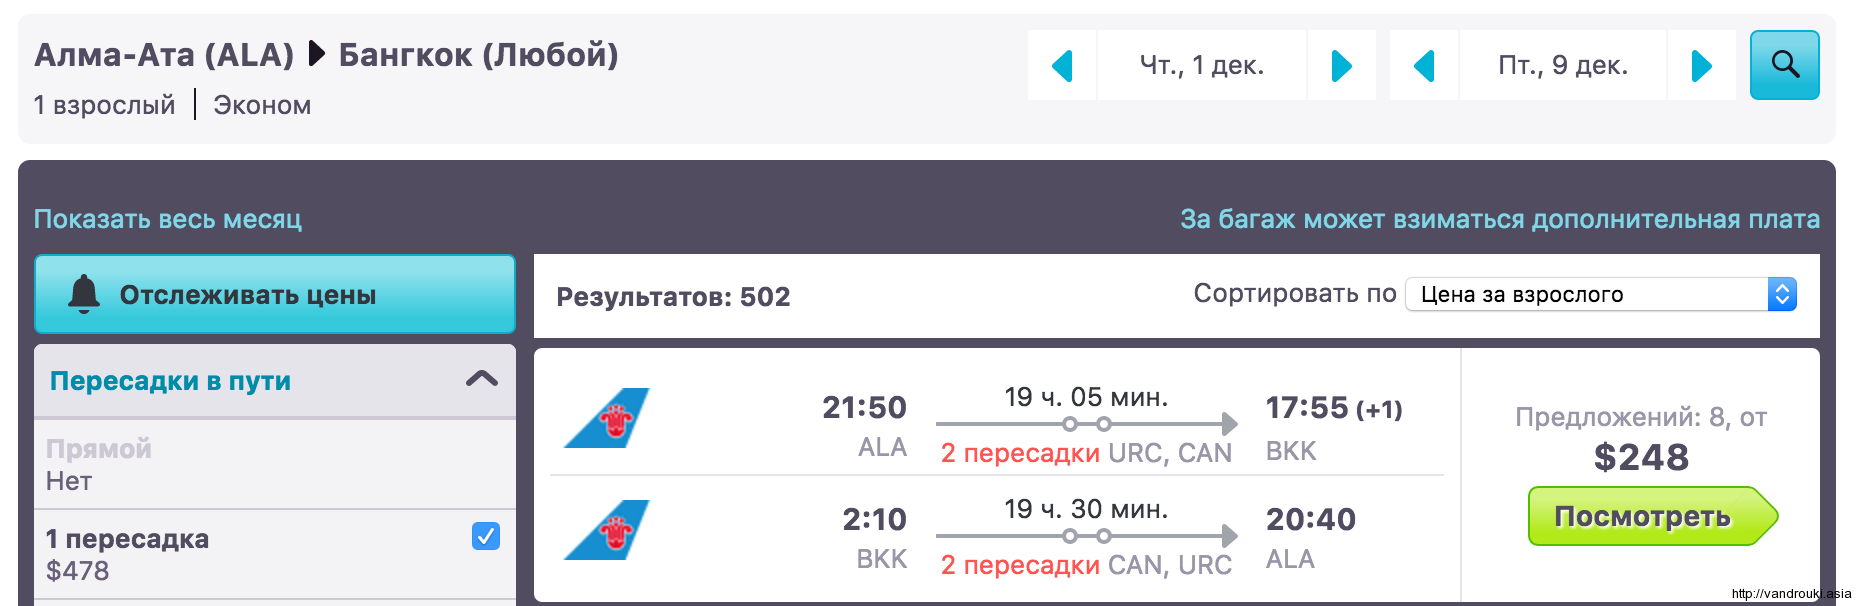 Киев екатеринбург авиабилет купить билеты на самолет аэропорта